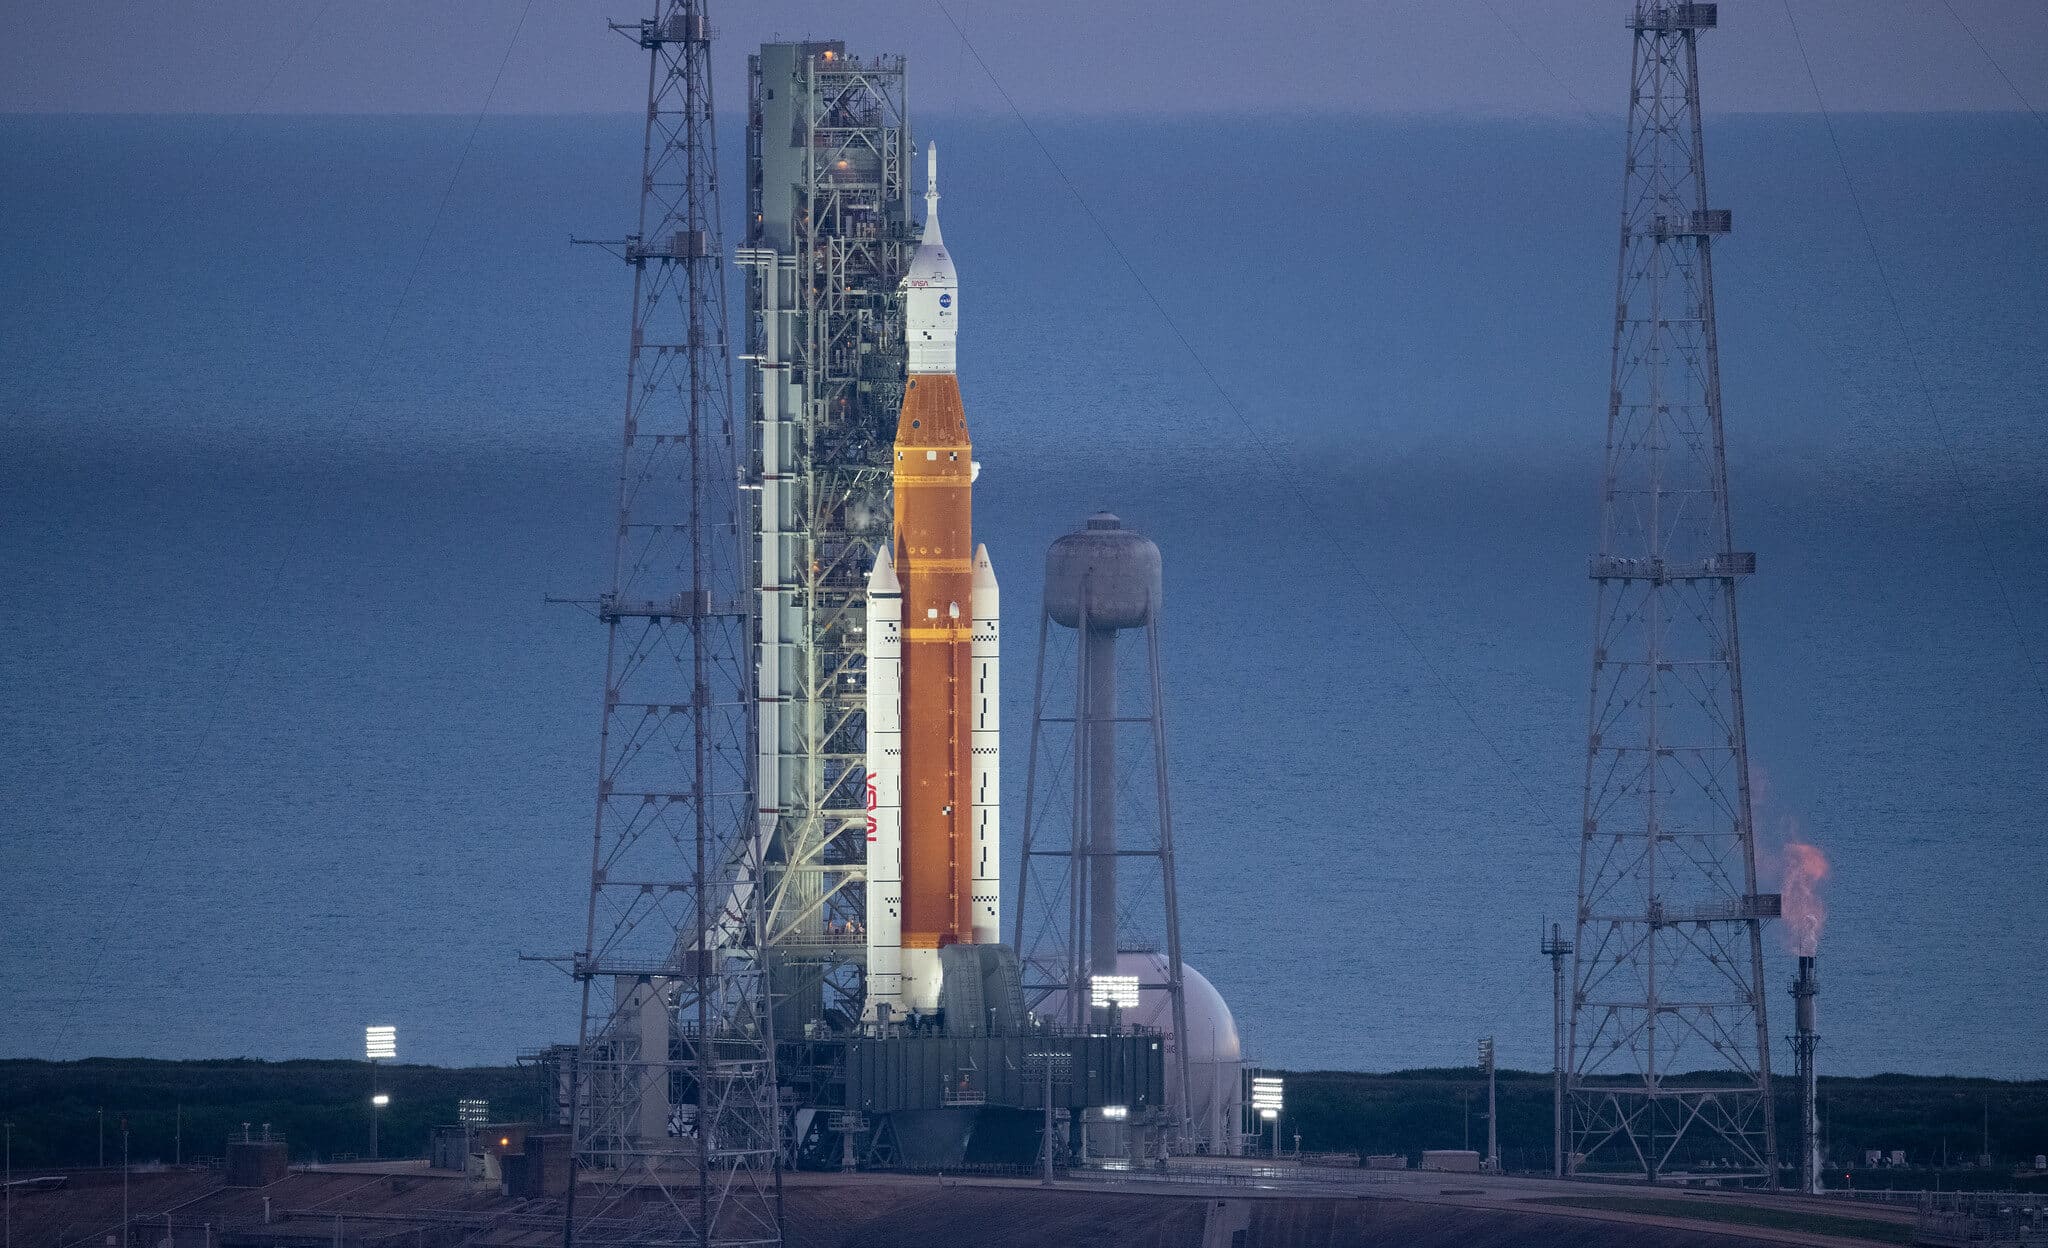 משגר SLS ועליו החללית ארטמיס 1 על כן השיגור בעת השיגור המקורי ב-29 באוגוסט 2022. השיגור נדחה בגלל דליפת מימן מאחד המנועים. צילום יחצ, נאס"א